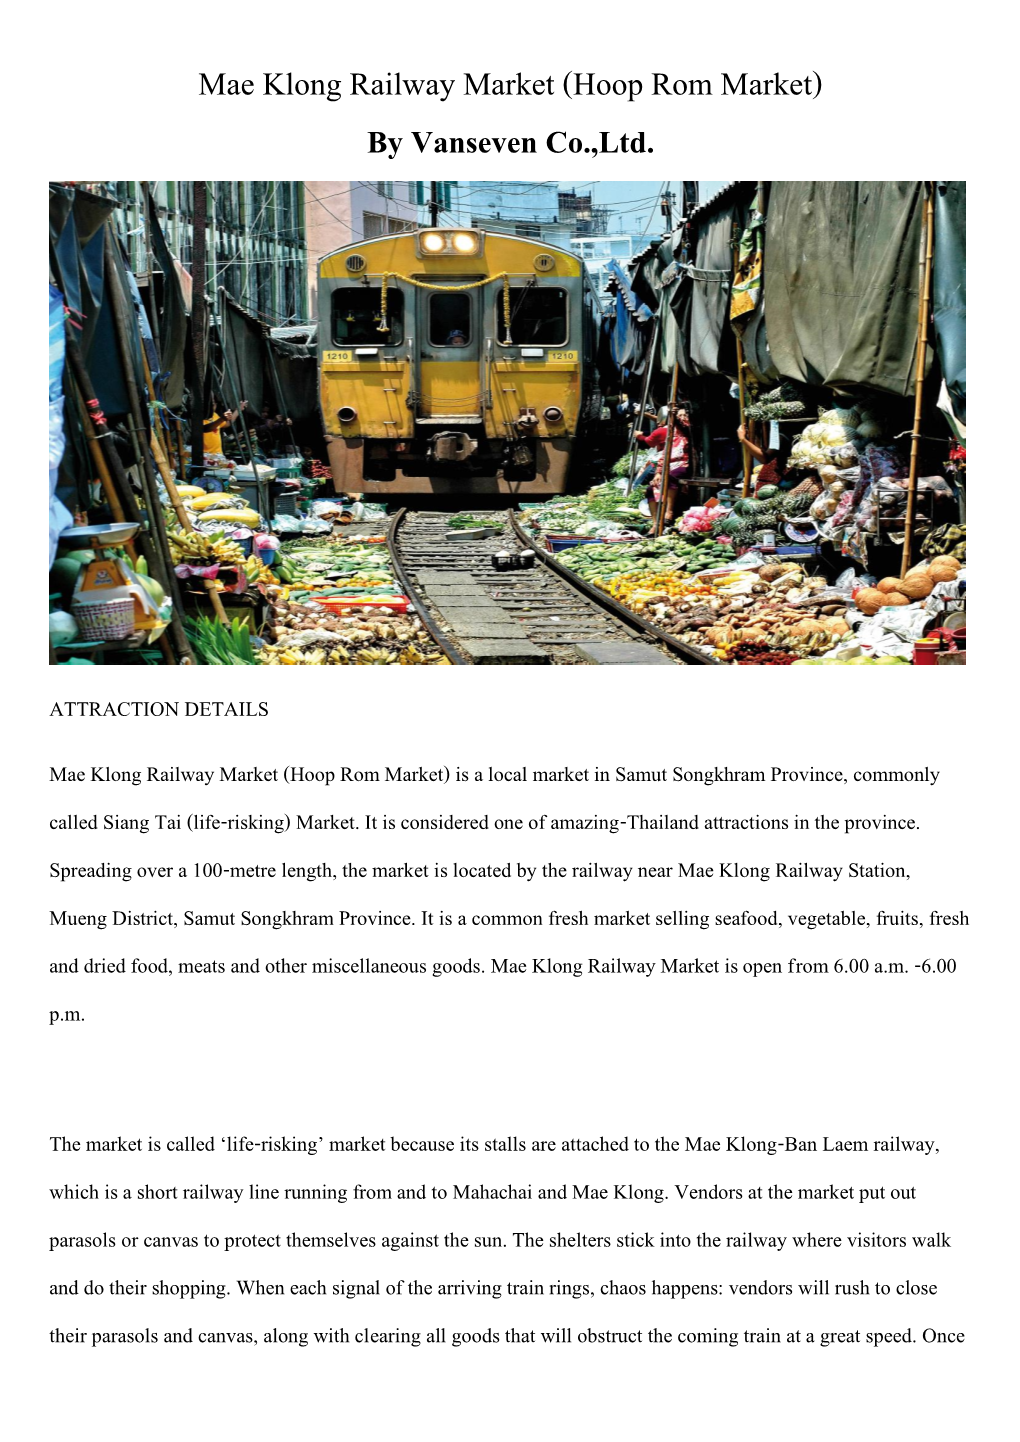 Mae Klong Railway Market (Hoop Rom Market) by Vanseven Co.,Ltd